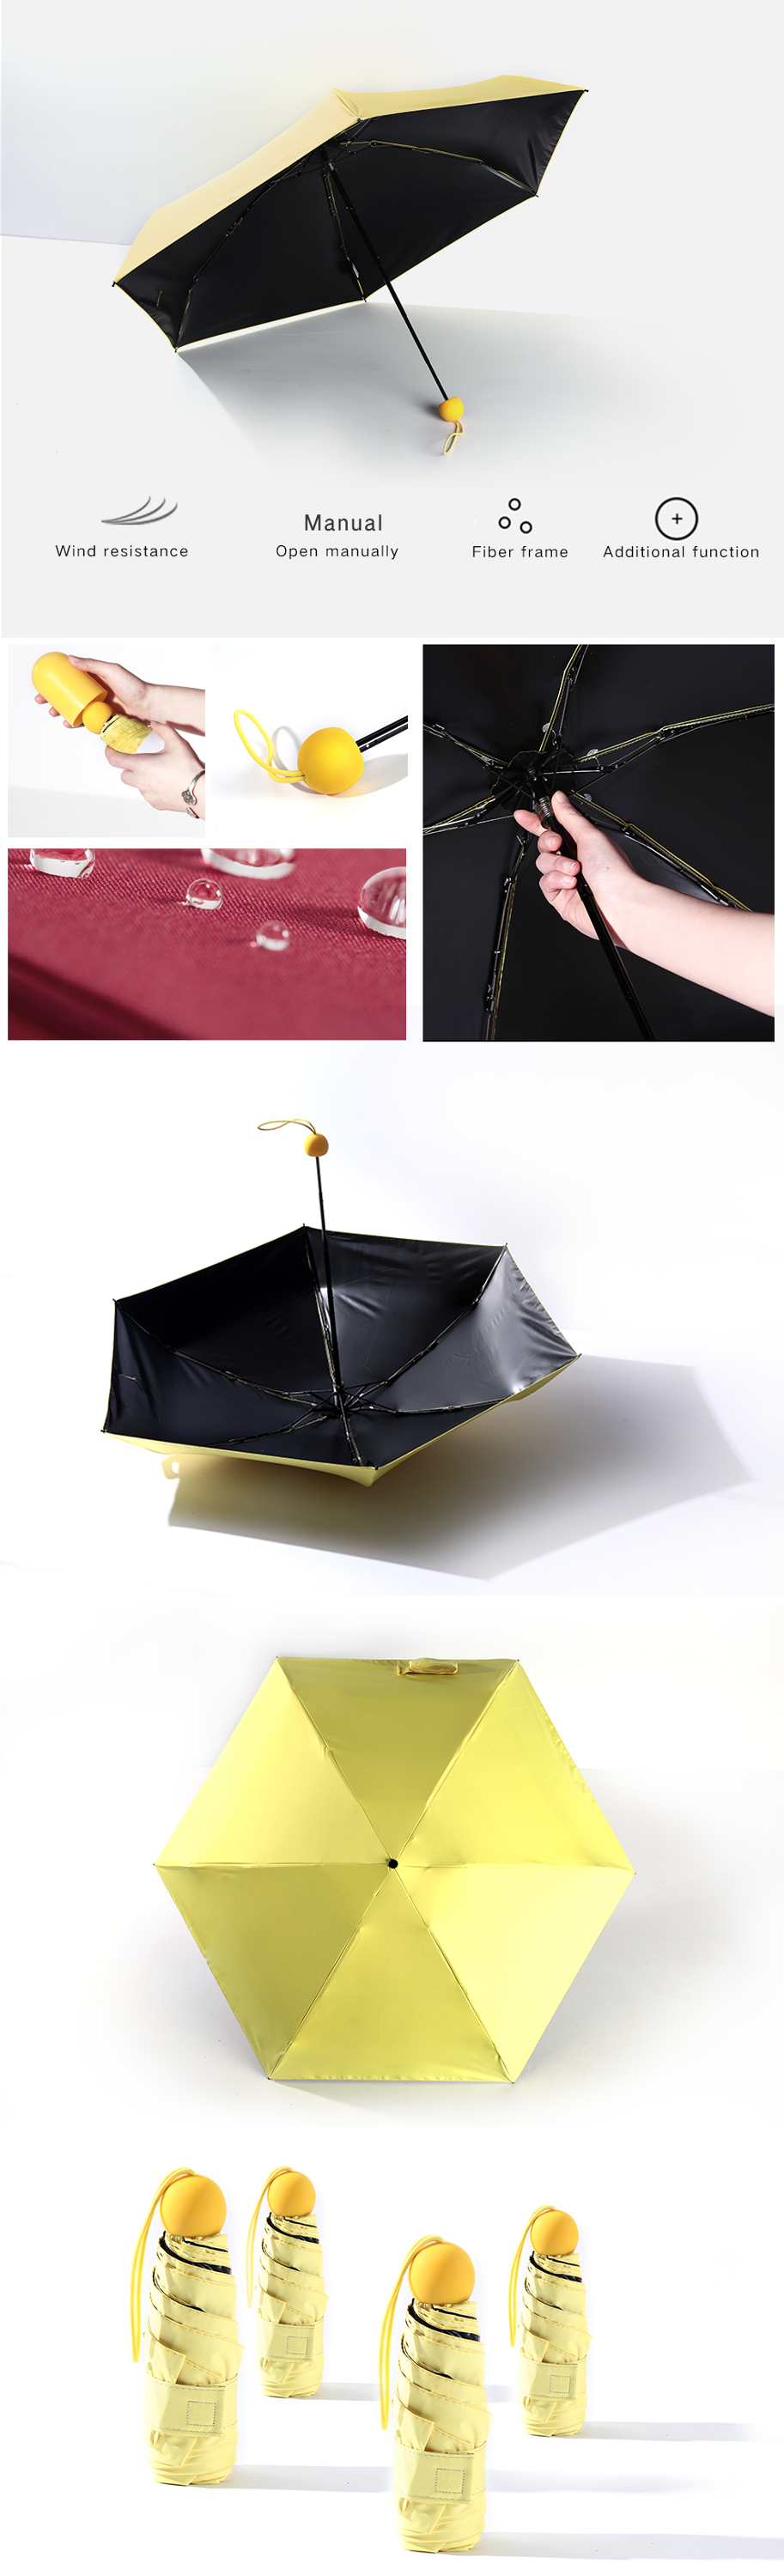 5 folding Capsule umbrella advertising05